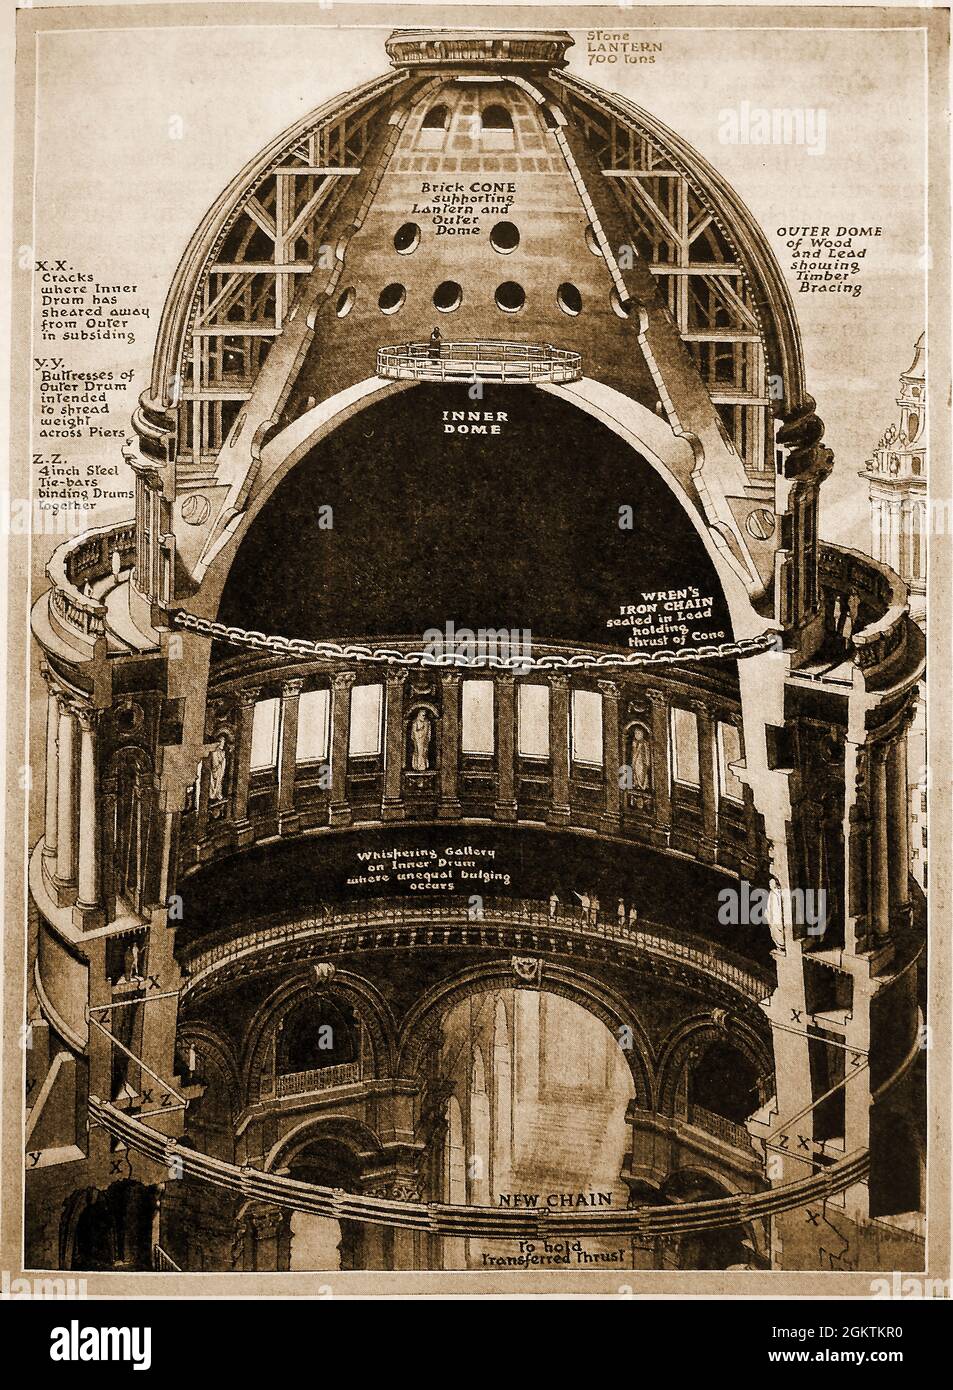 Un schéma en coupe illustré des années 1930 illustrant les améliorations apportées au dôme de la cathédrale Saint-Paul, Londres, Royaume-Uni à cette époque Banque D'Images